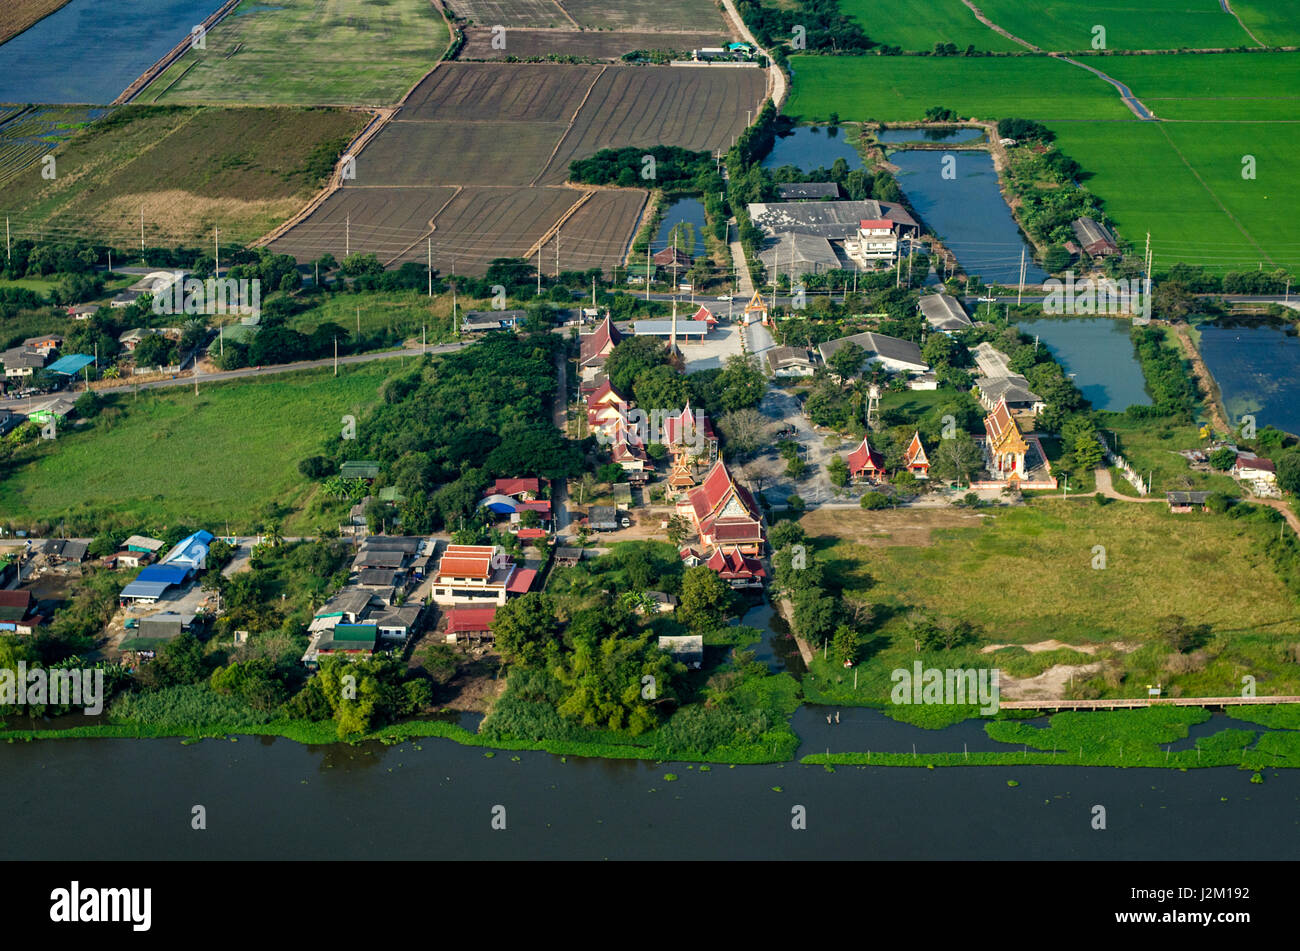 Buddhistische Tempel, Ackerland, Reis Felder Ackerland in Thailand Luftbild Stockfoto